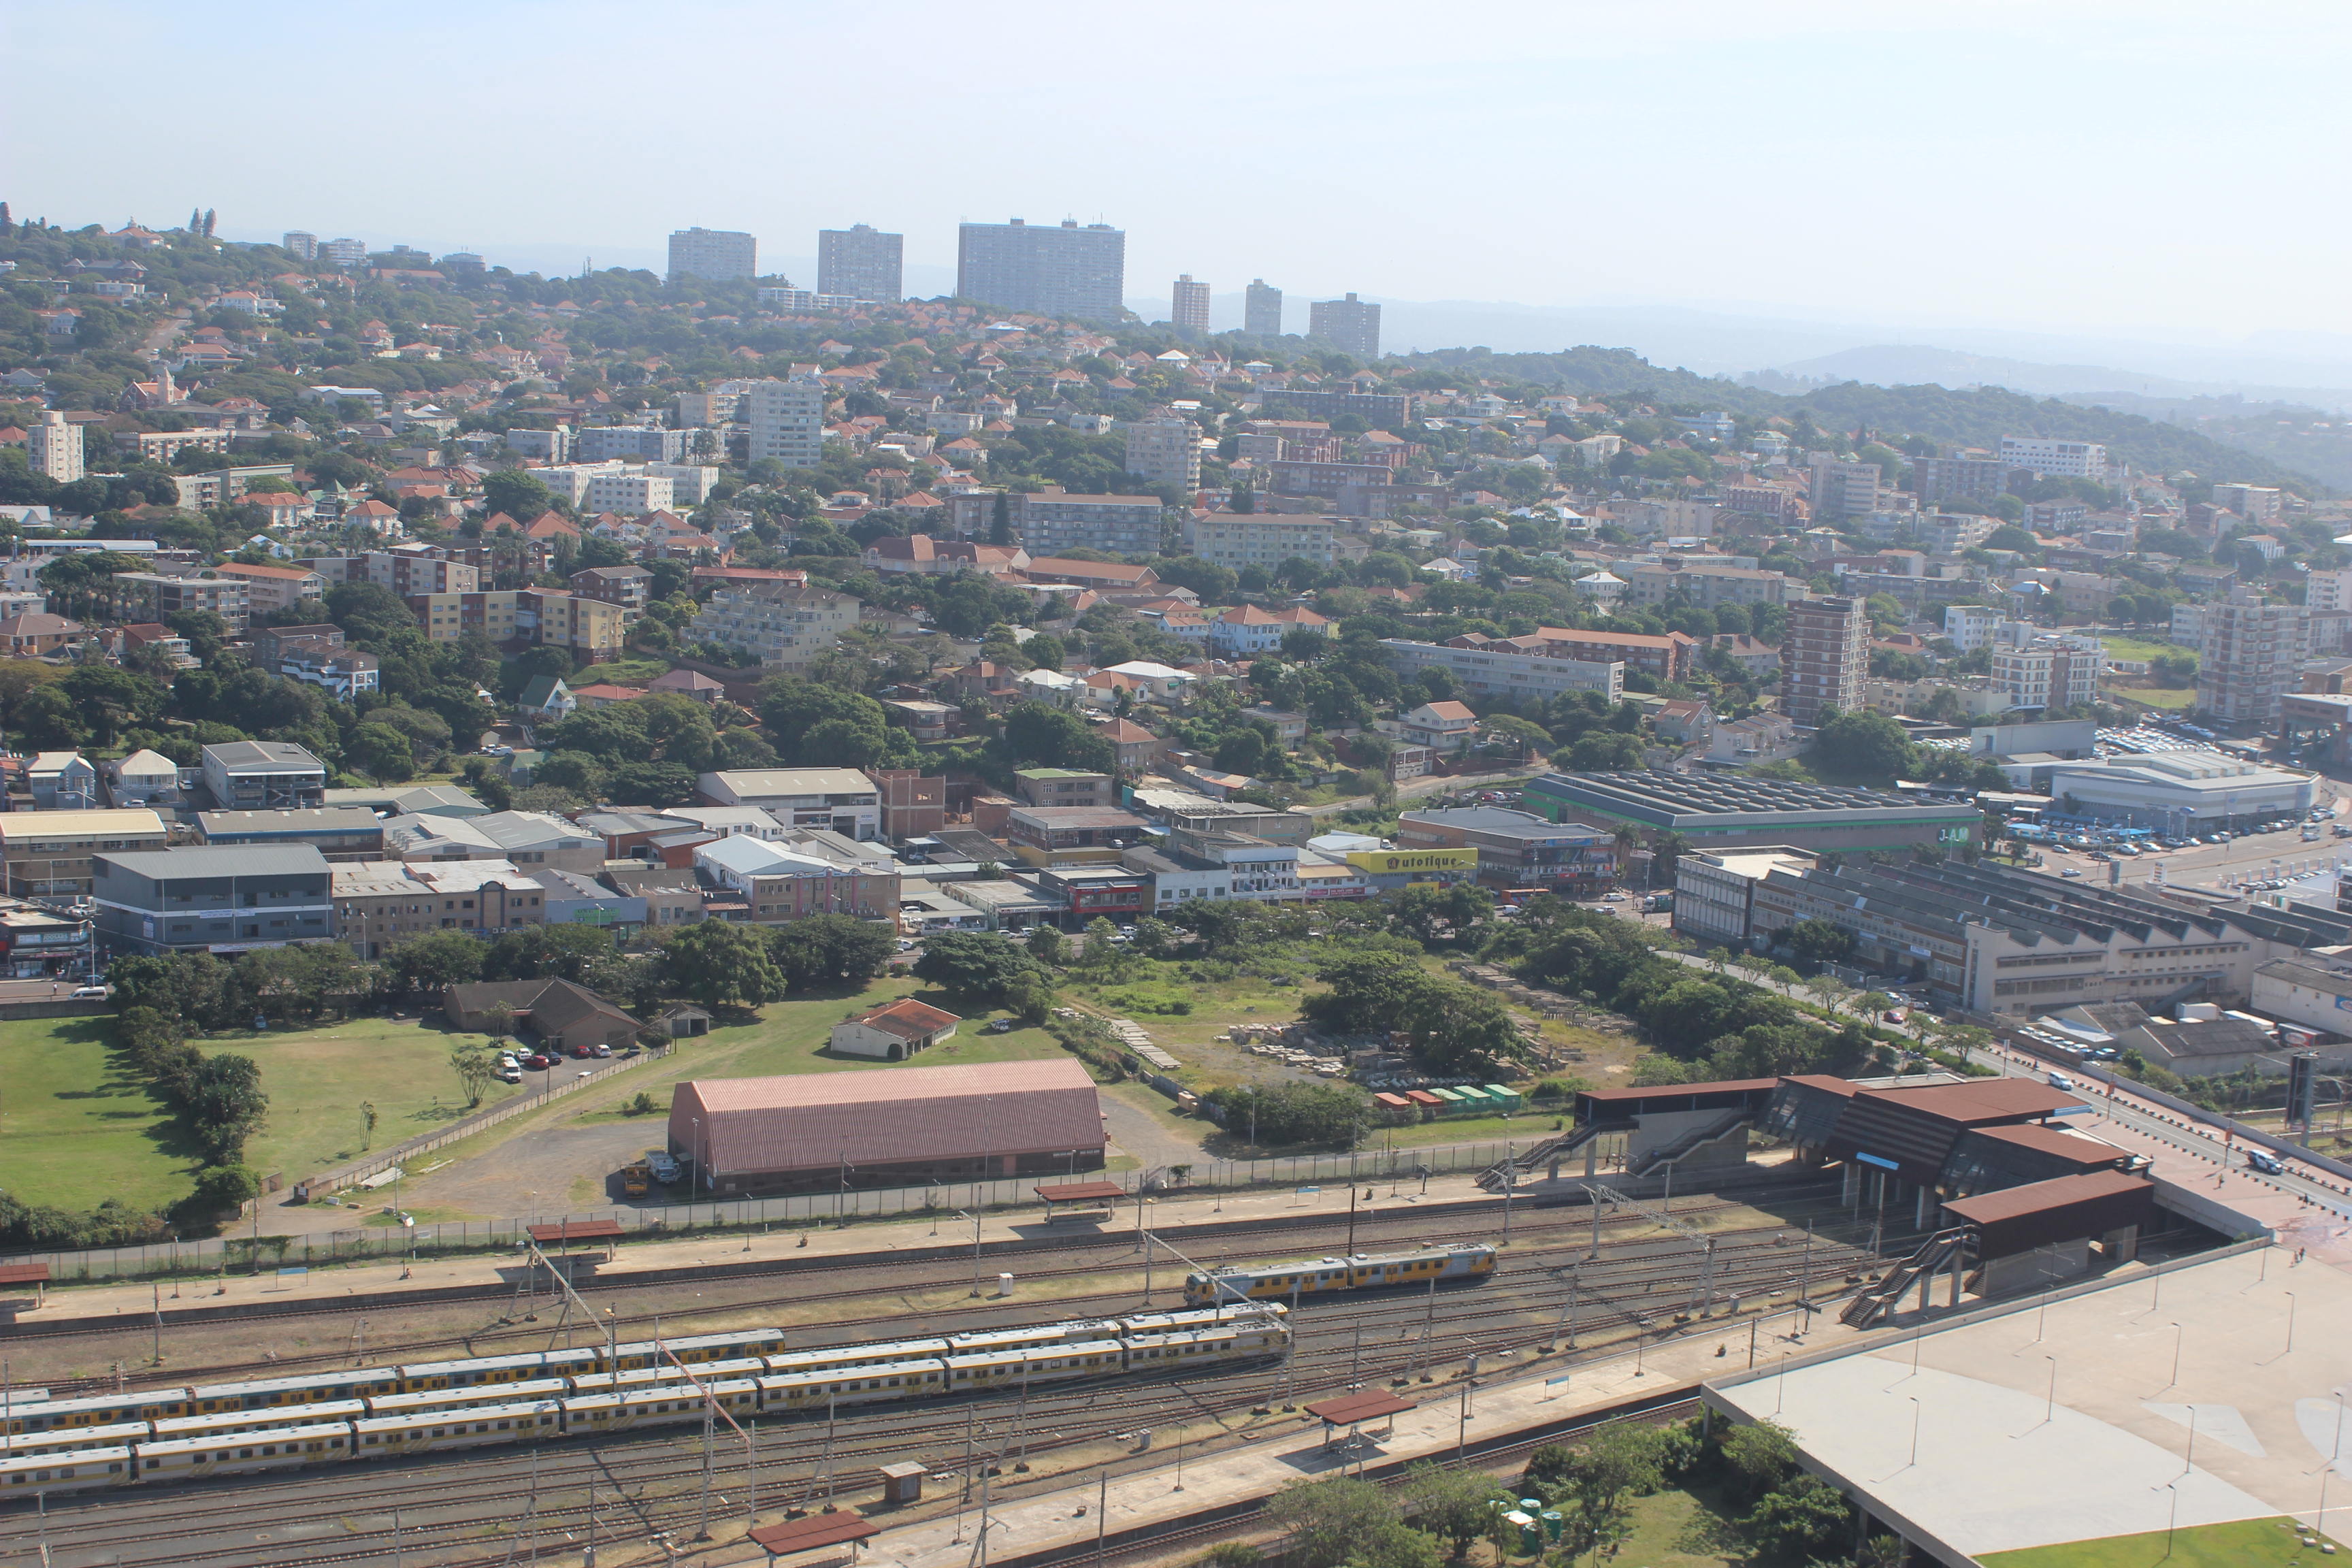 Durban vista do alto do Estádio Moses Mabhida - Estrada de ferro - herança britânica 2.JPG